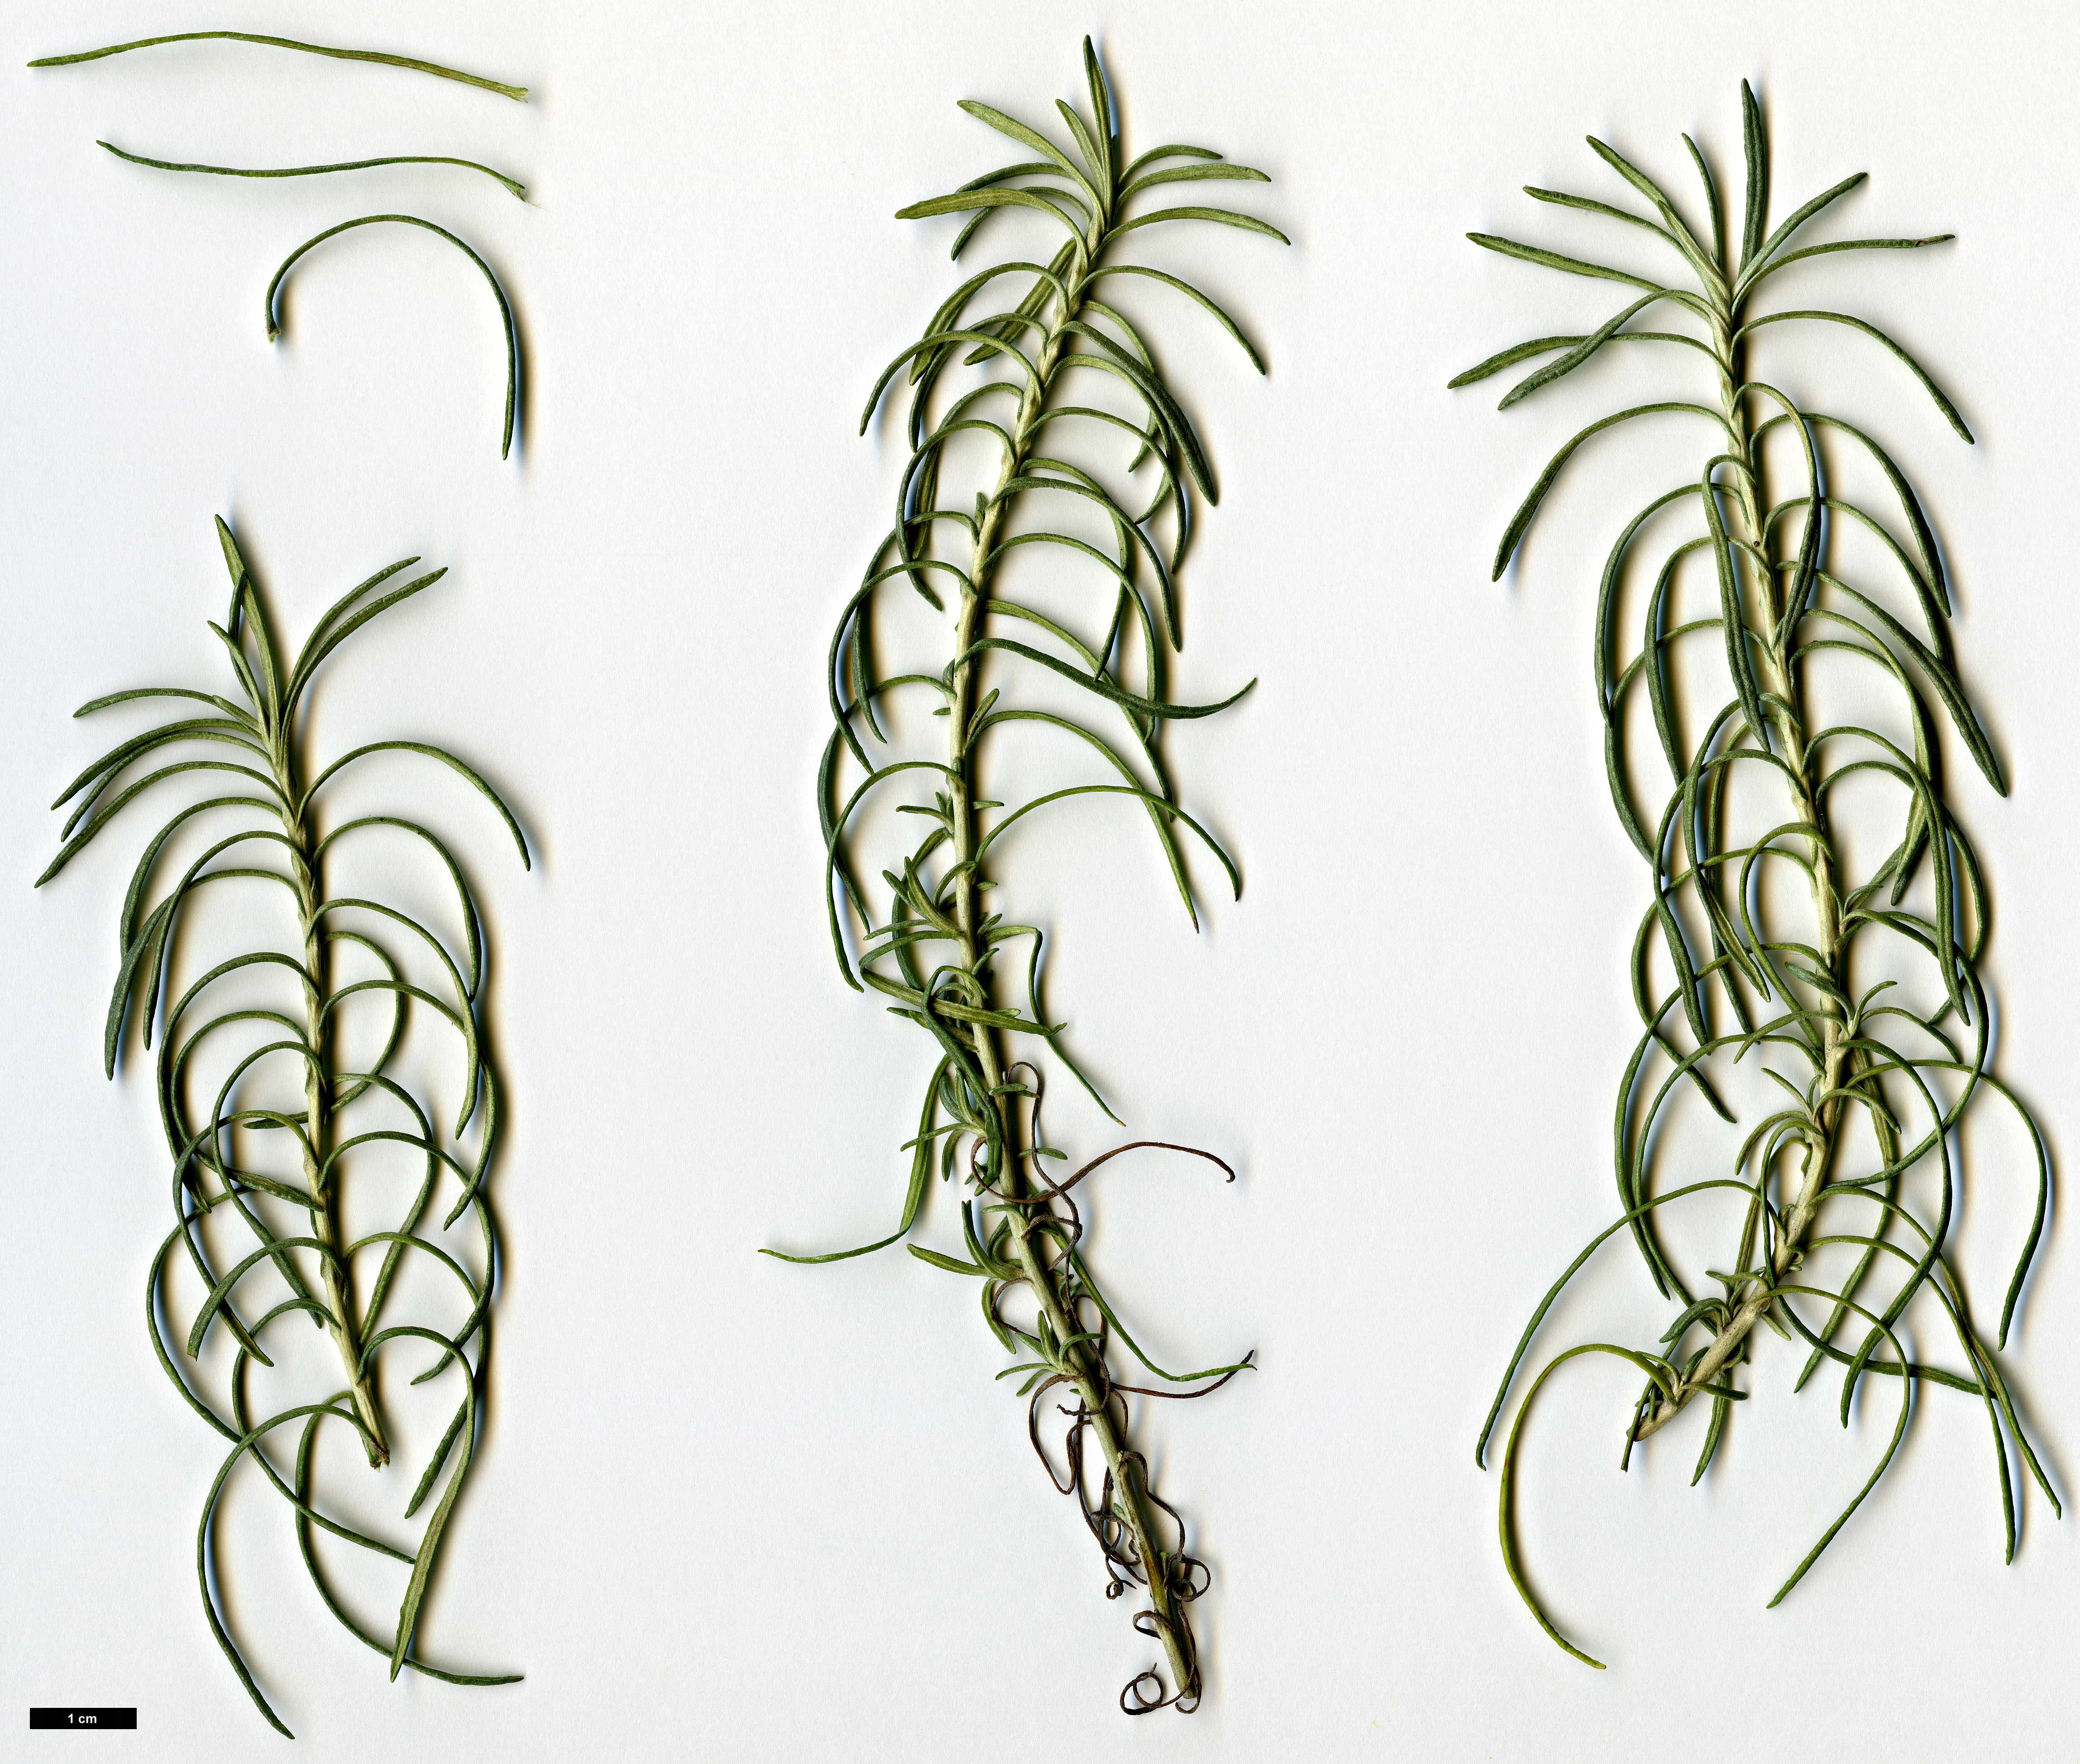 High resolution image: Family: Asteraceae - Genus: Helichrysum - Taxon: italicum - SpeciesSub: subsp. serotinum